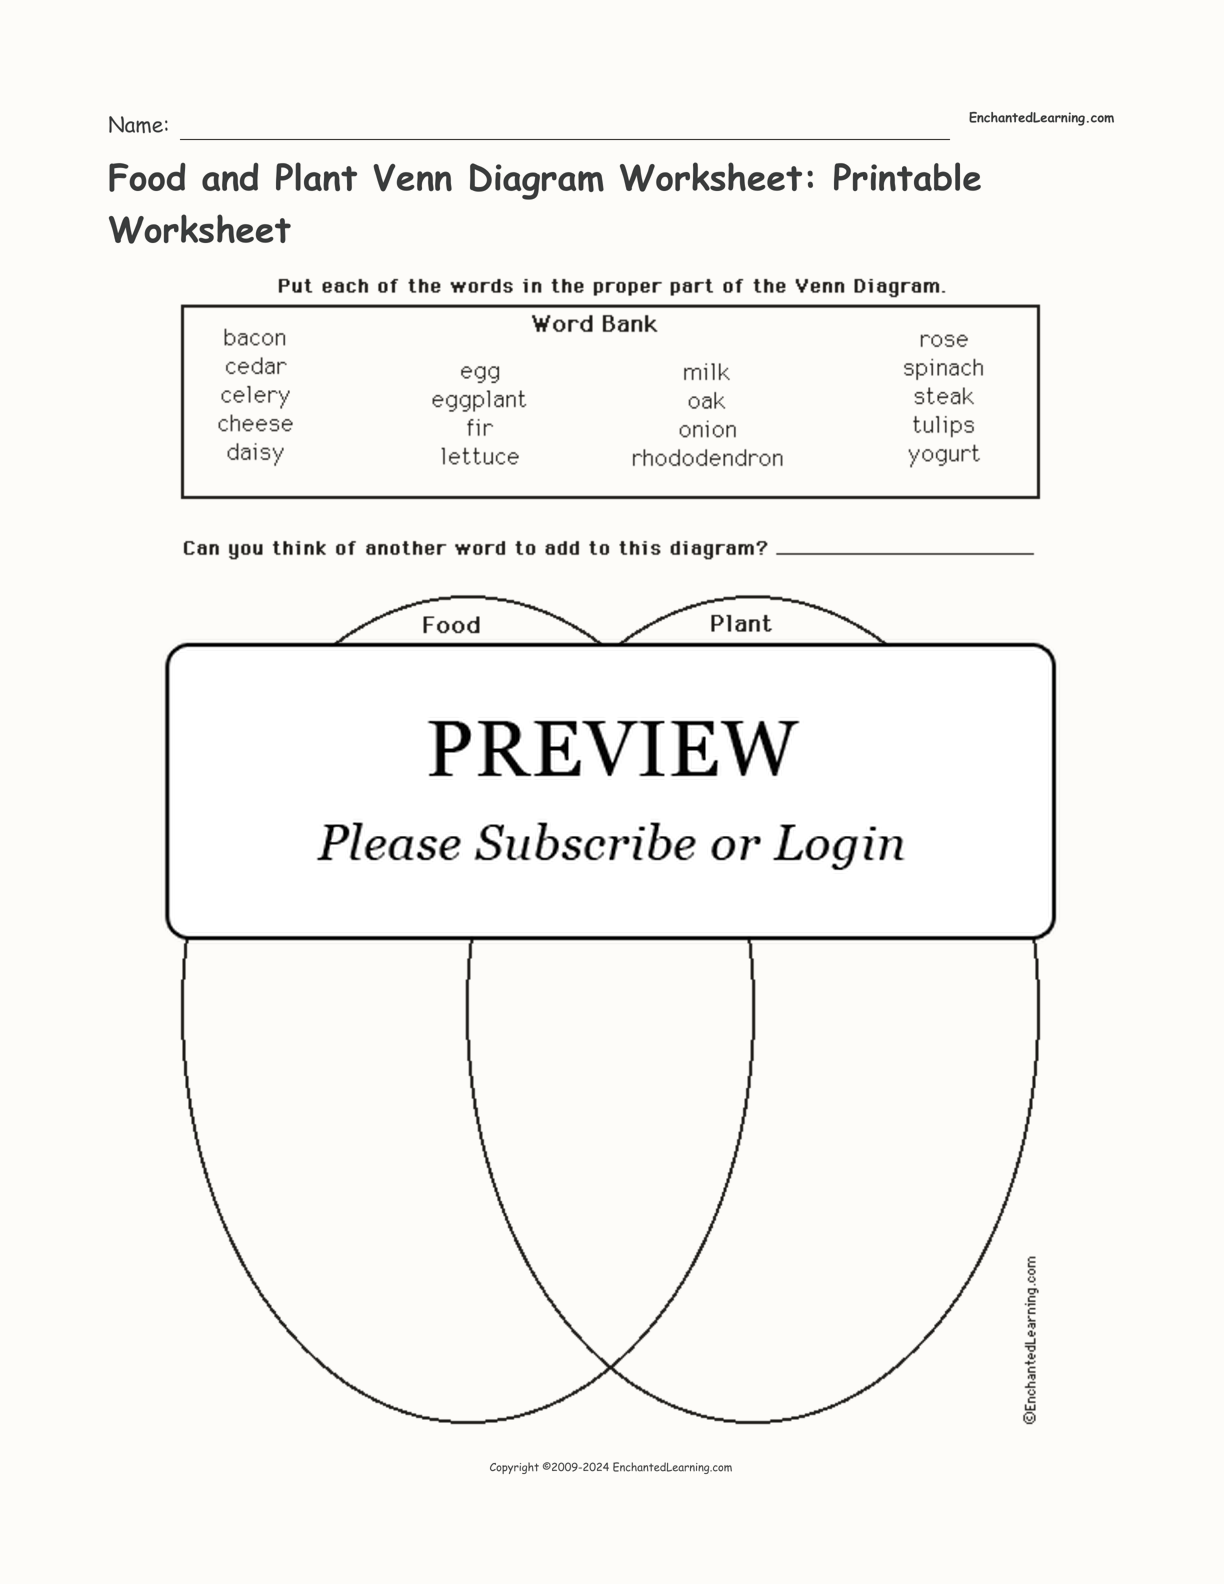 Food and Plant Venn Diagram Worksheet: Printable Worksheet interactive worksheet page 1